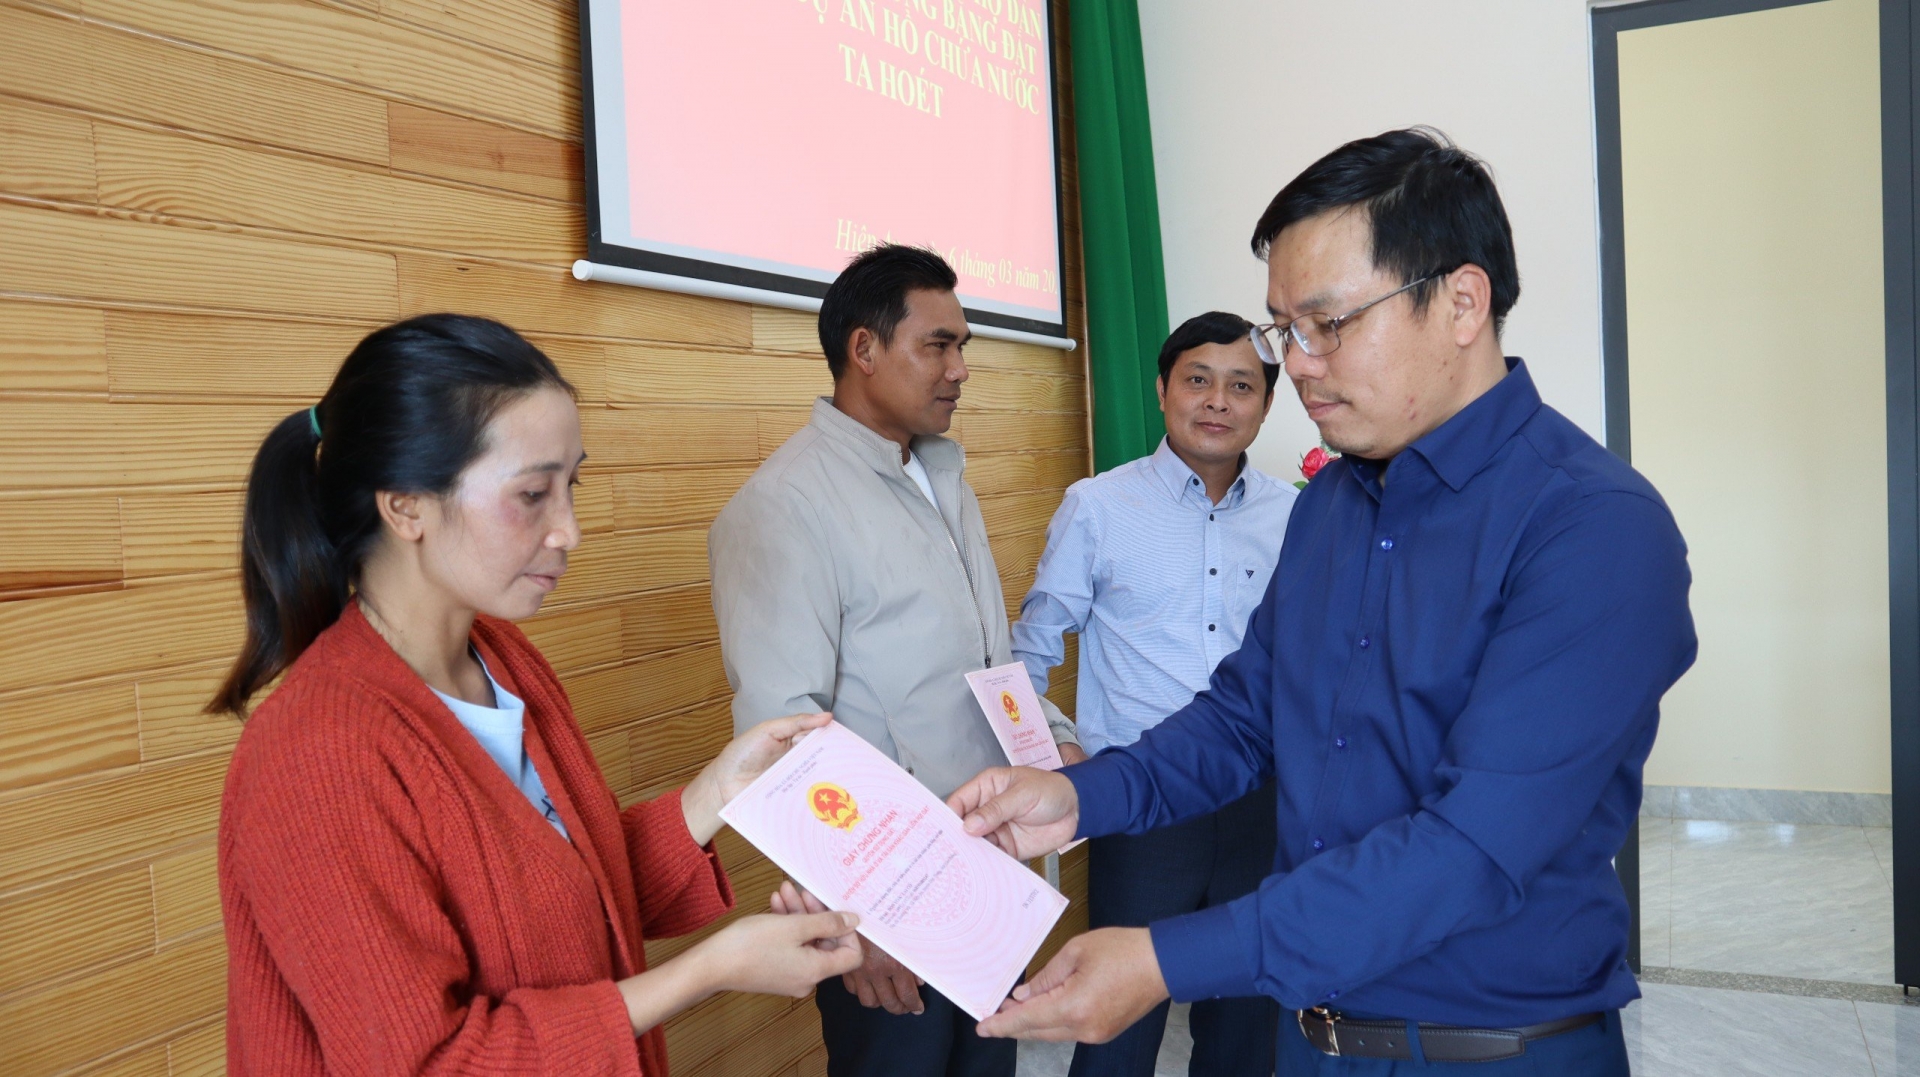 Trao giấy chứng nhận quyền sử dụng đất tái định canh cho 6 hộ dân có đất bị thu hồi tại dự án hồ Ta Hoét